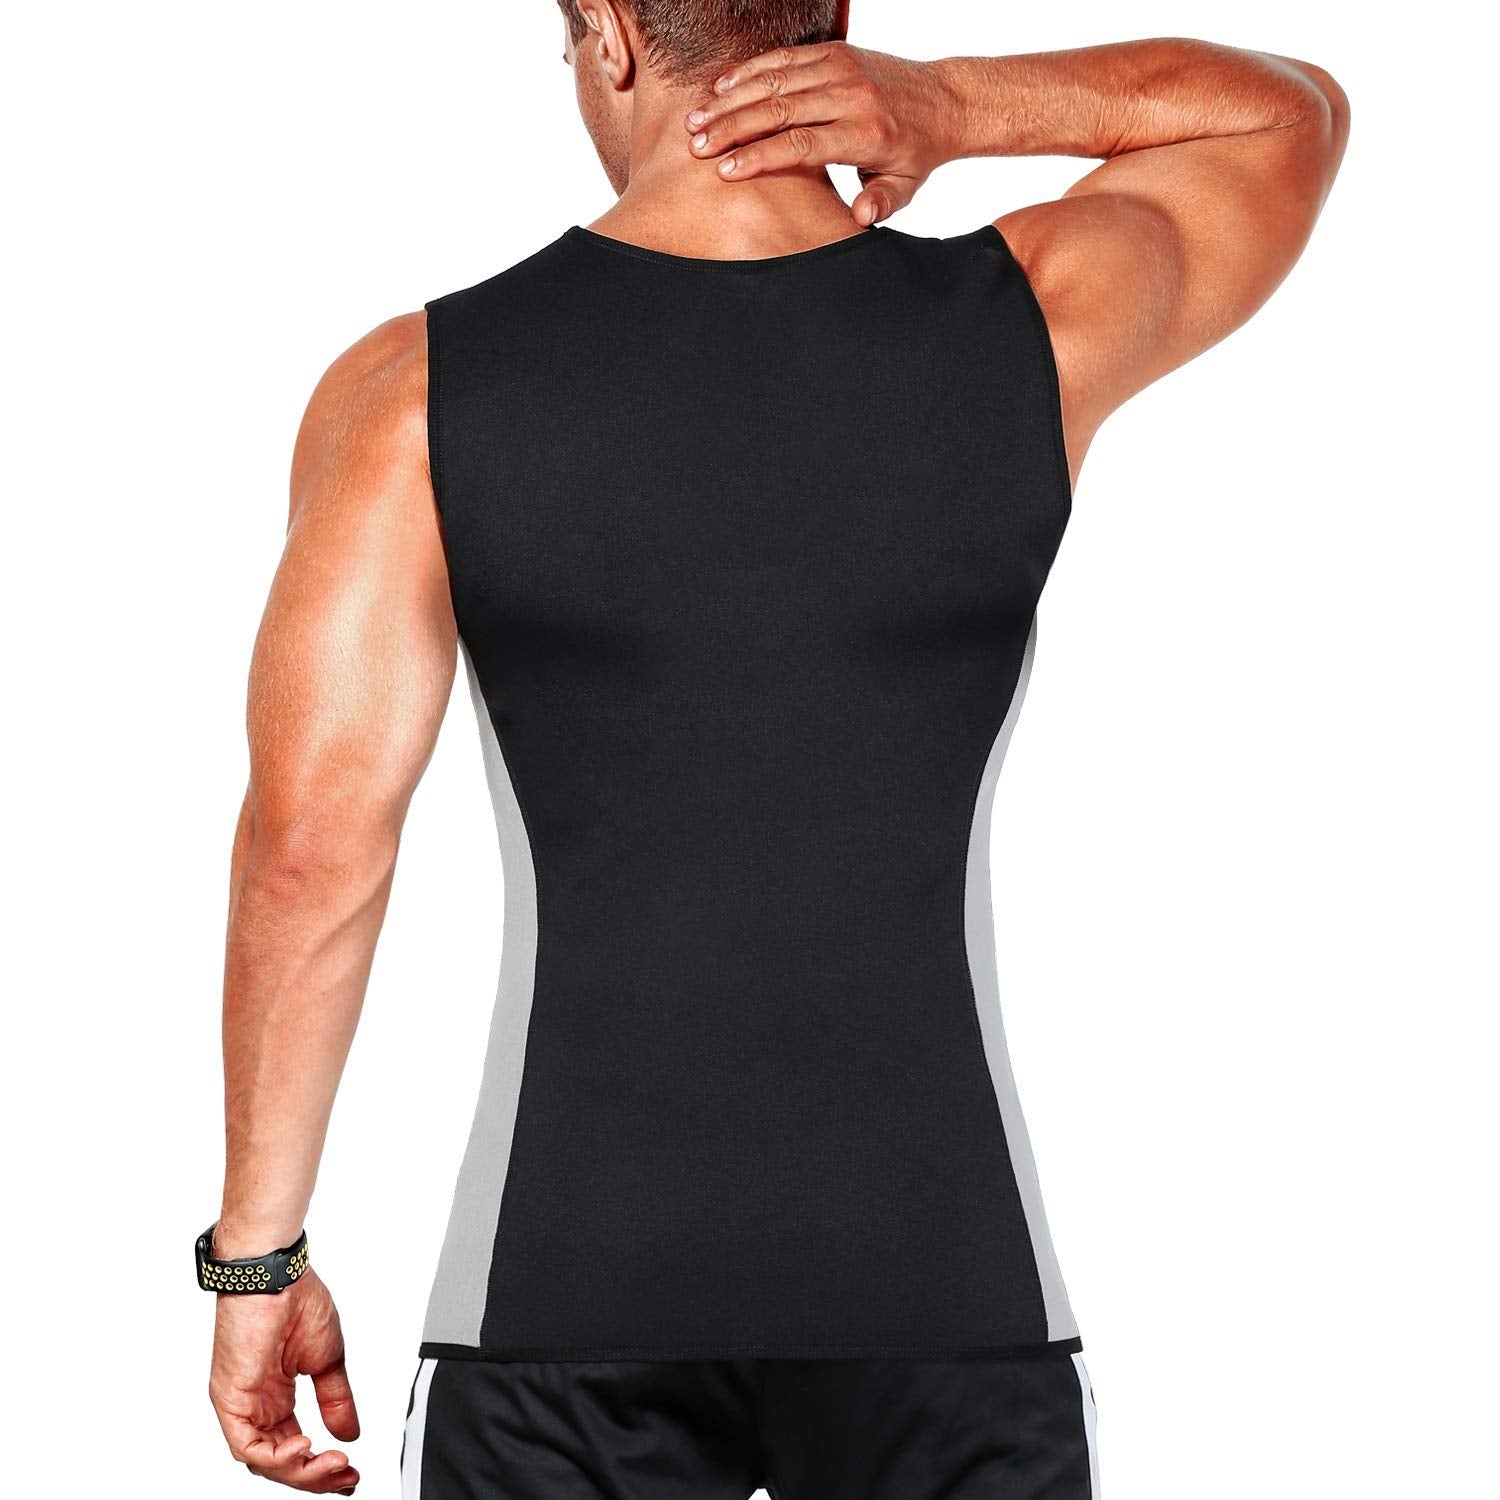 ZOUYUE Mens Sweat Sauna Vest for Waist Trainer, Sweat Sauna Suit Zipper  Neoprene Workout Vest for Men